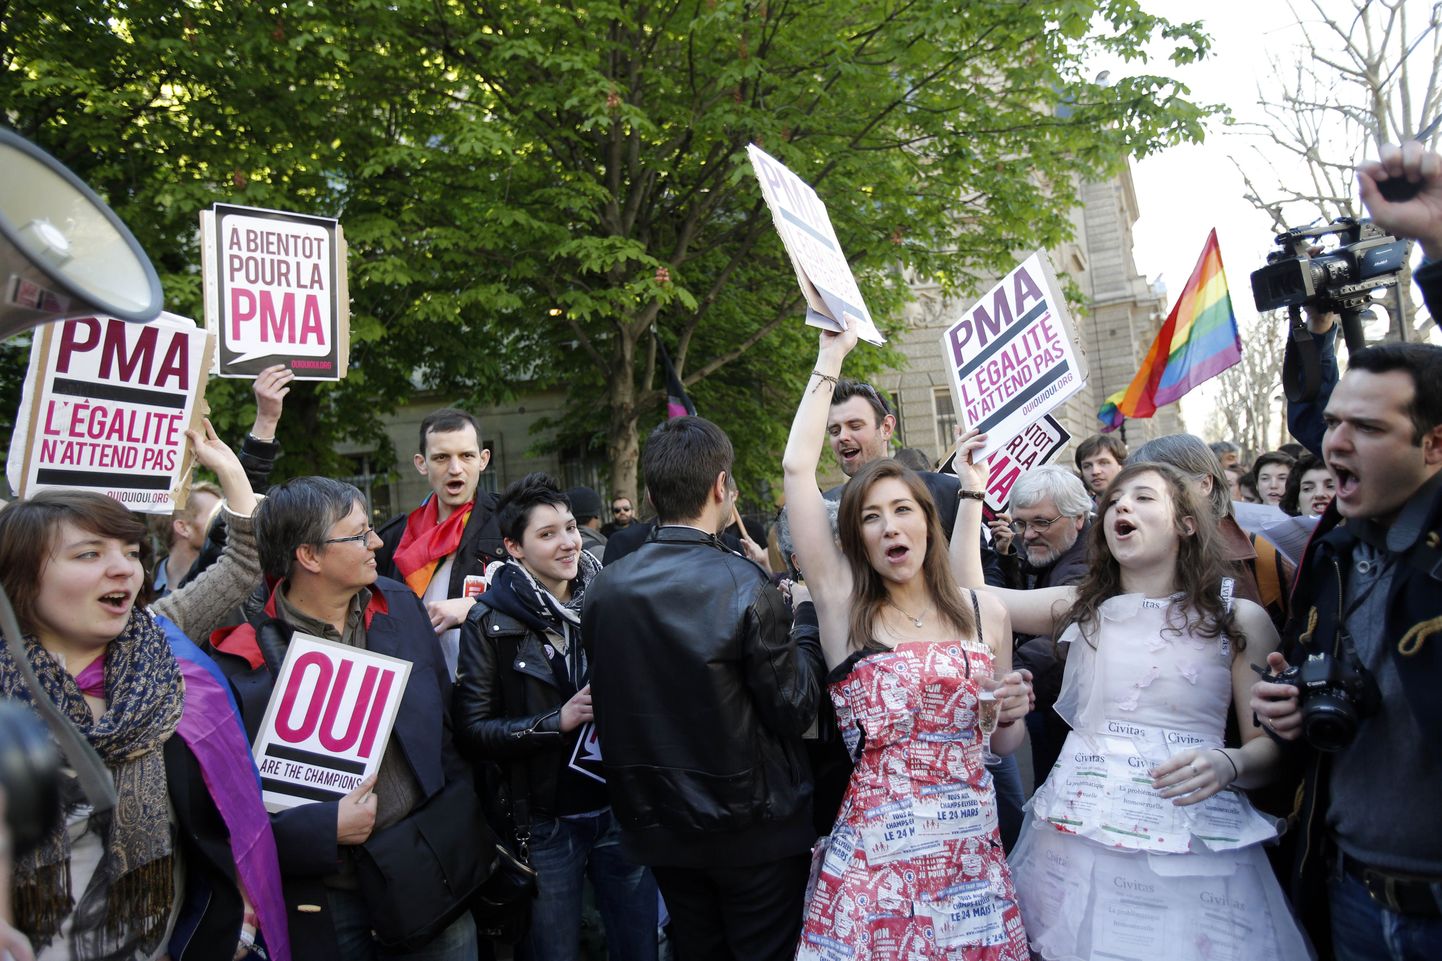 Homoabielu pooldajad rahvusassamblee otsust tähistamas.